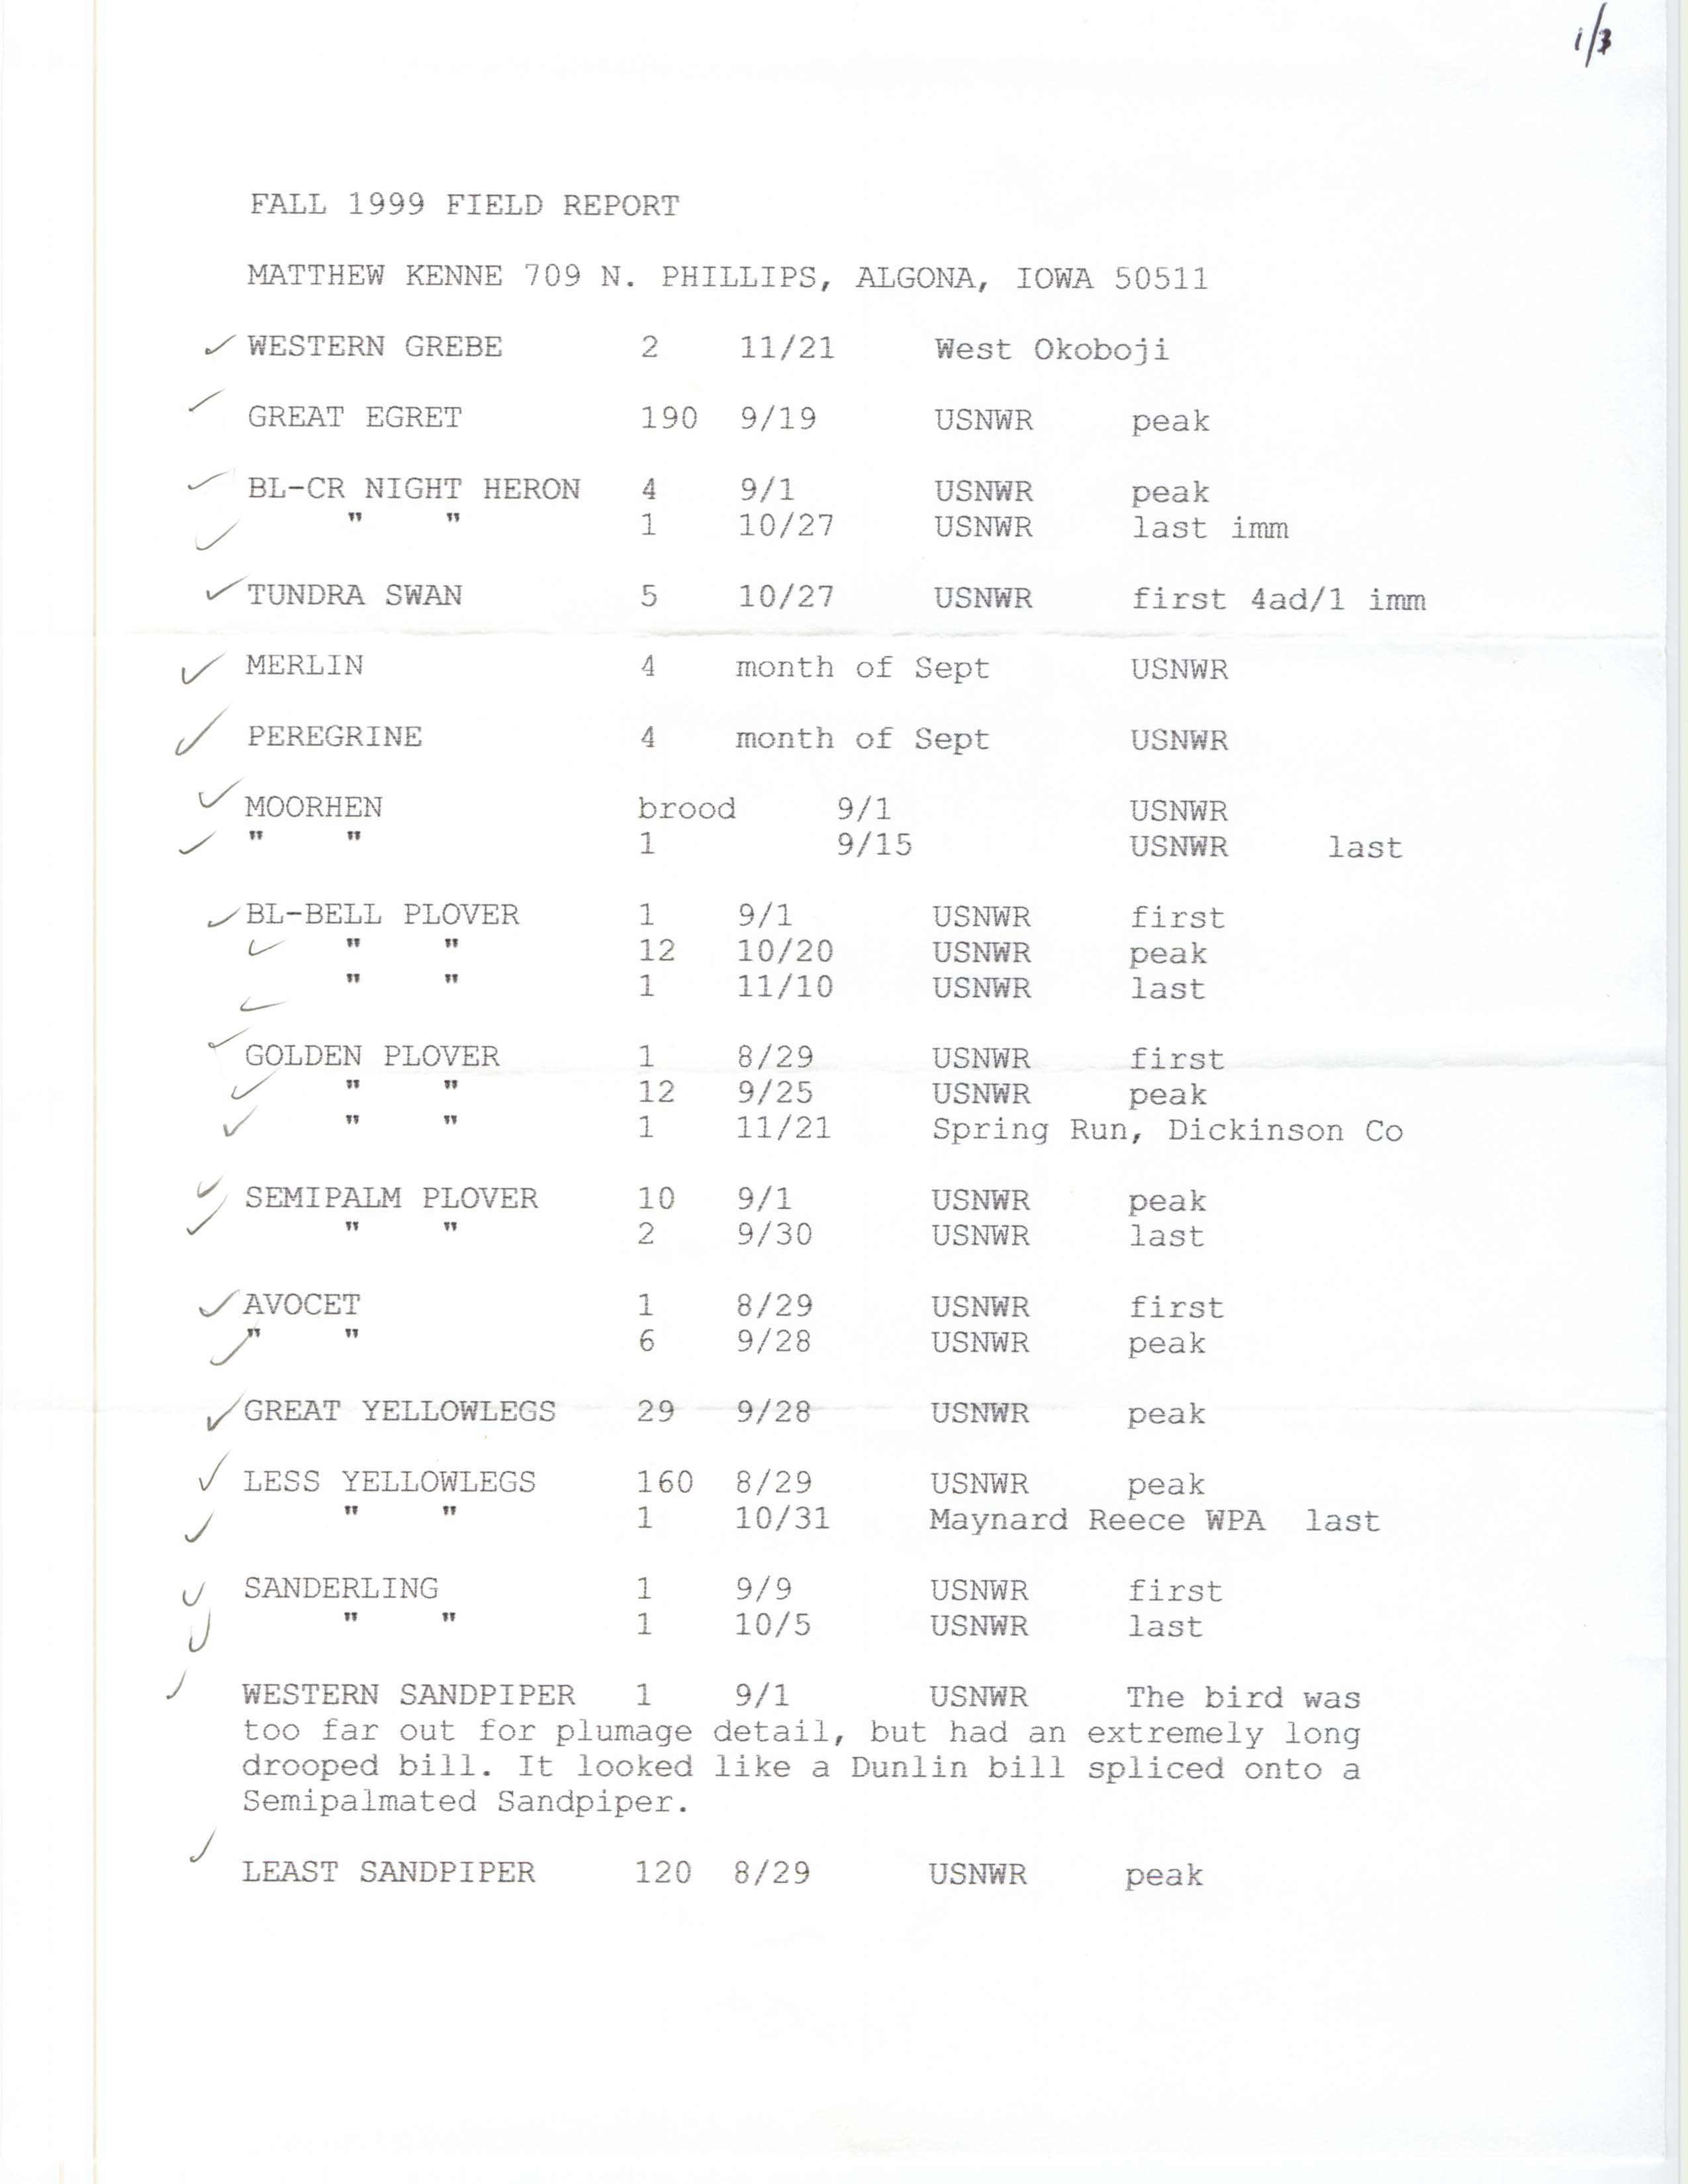 Fall 1999 field report, Matthew Kenne